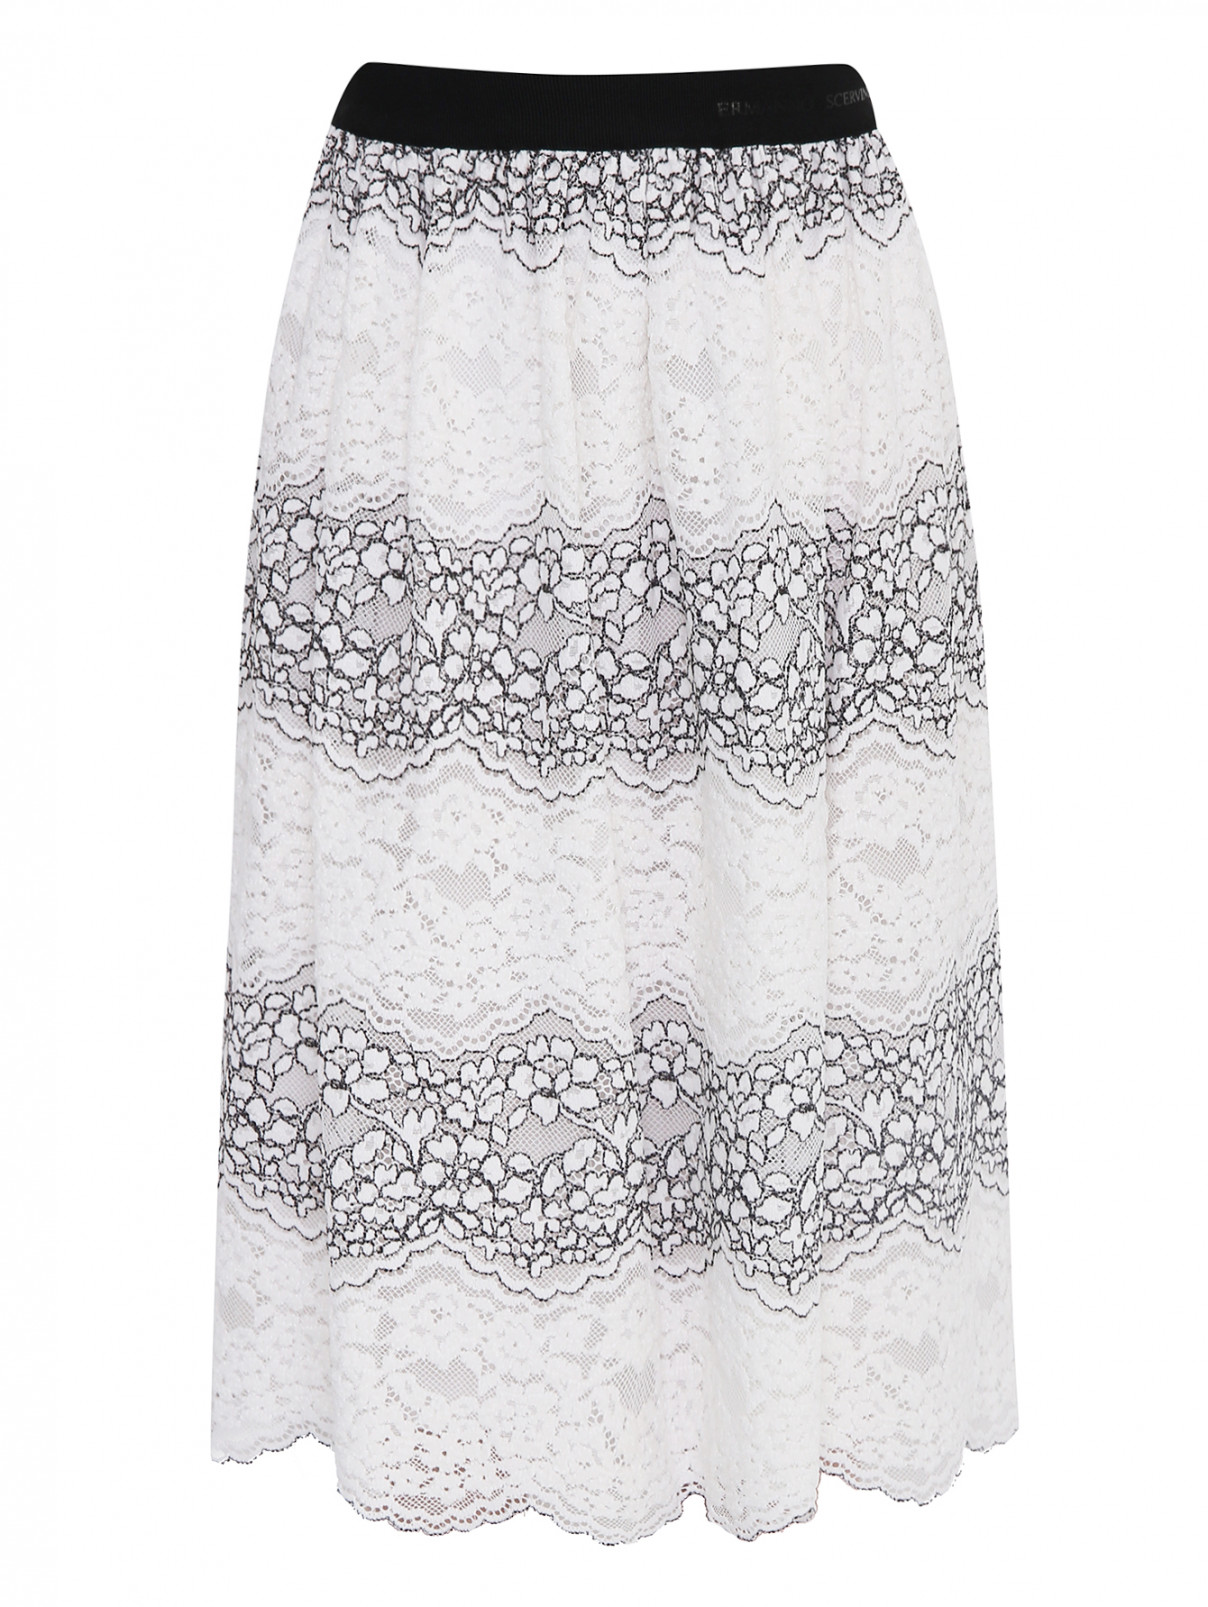 Кружевная юбка на резинке Ermanno Scervino Junior  –  Общий вид  – Цвет:  Белый